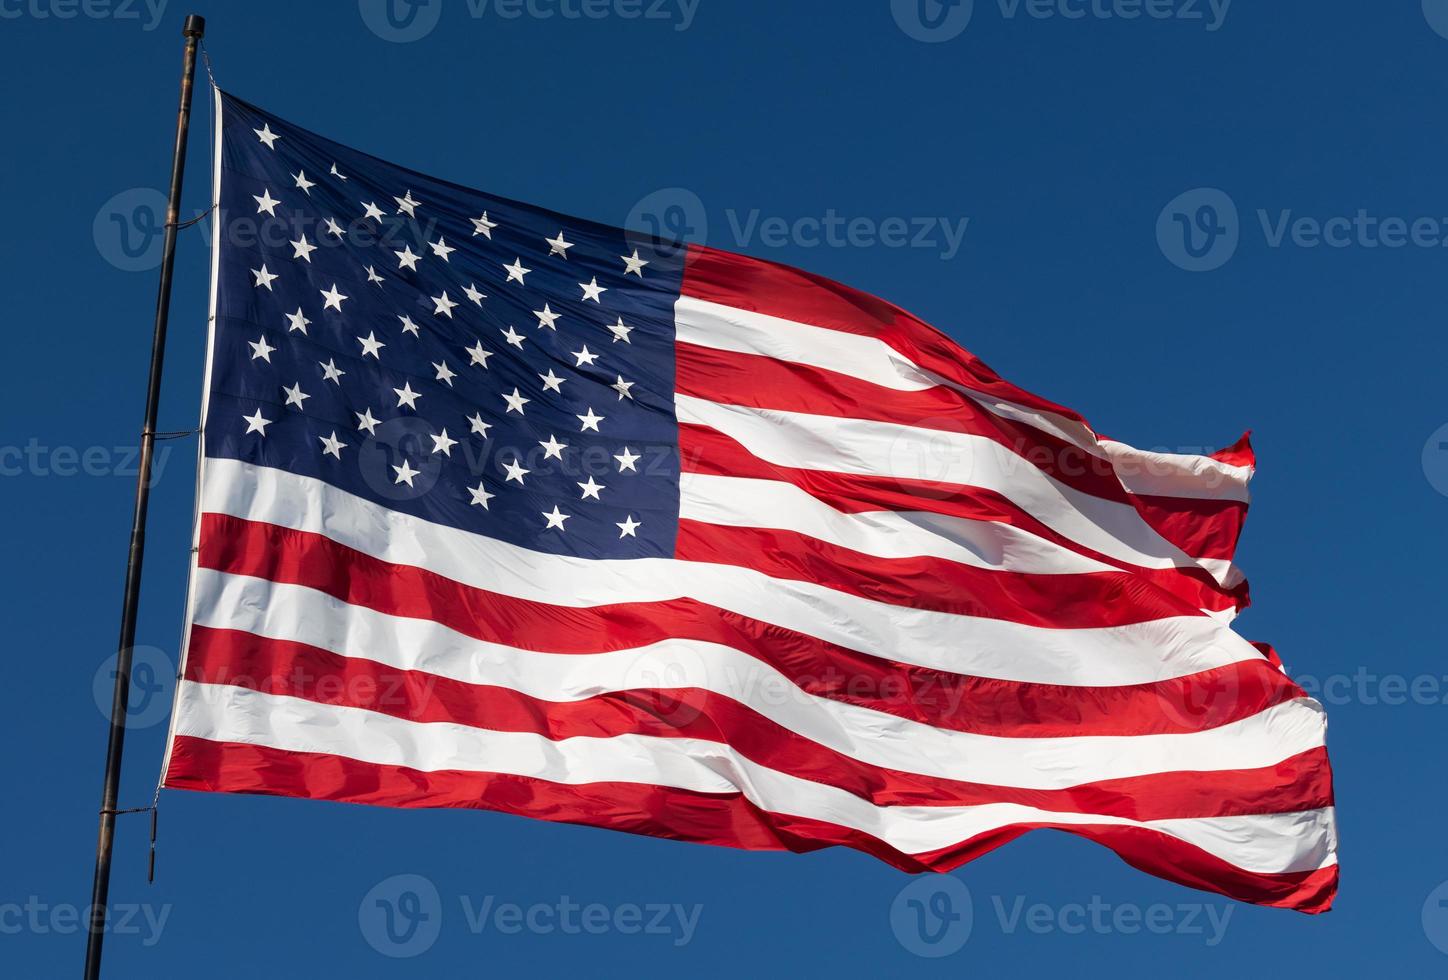 bandeira americana balançando ao vento contra um céu azul profundo foto